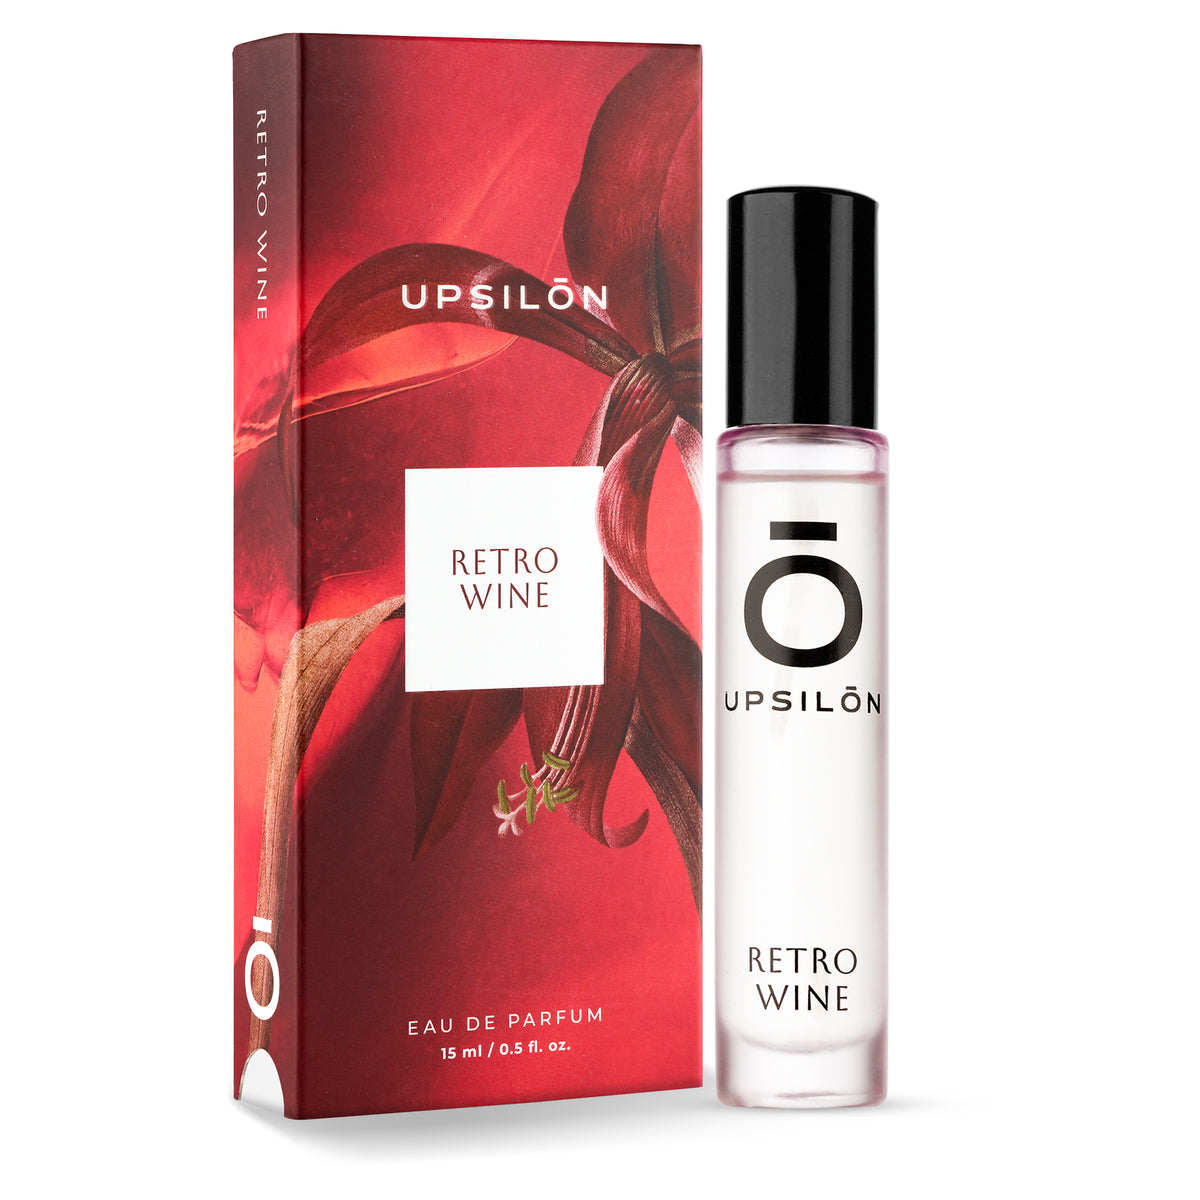 Upsilon Retro Wine Eau de Parfum for Women travel size perfume bottle, 15ml